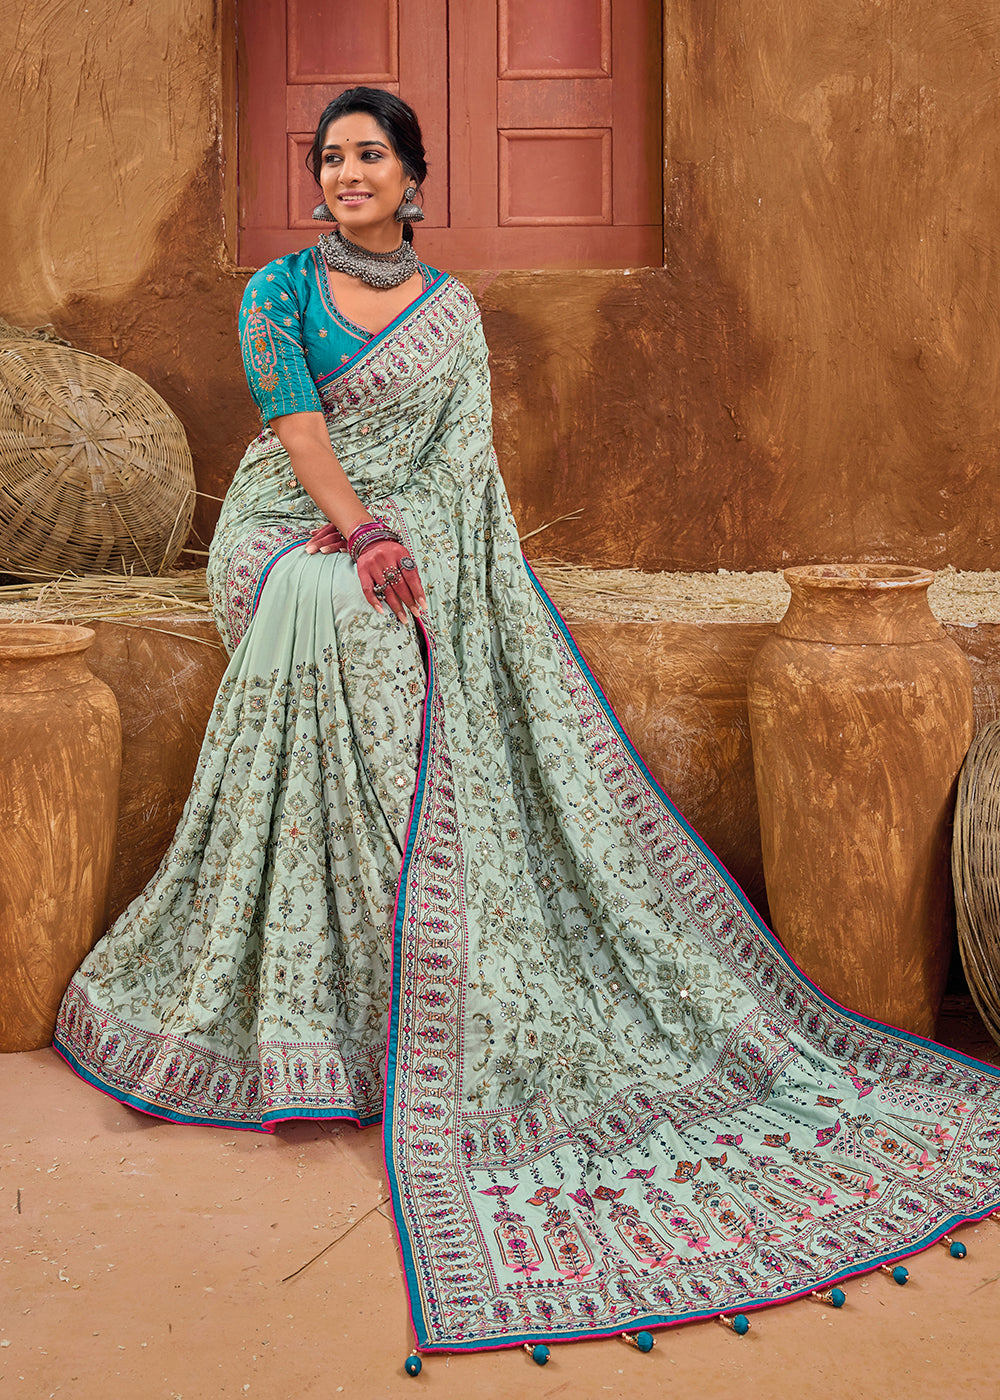 Buy Now Blue Kachhi & Mirror Work Traditional Banarasi Saree Online in USA, UK, Canada & Worldwide at Empress Clothing